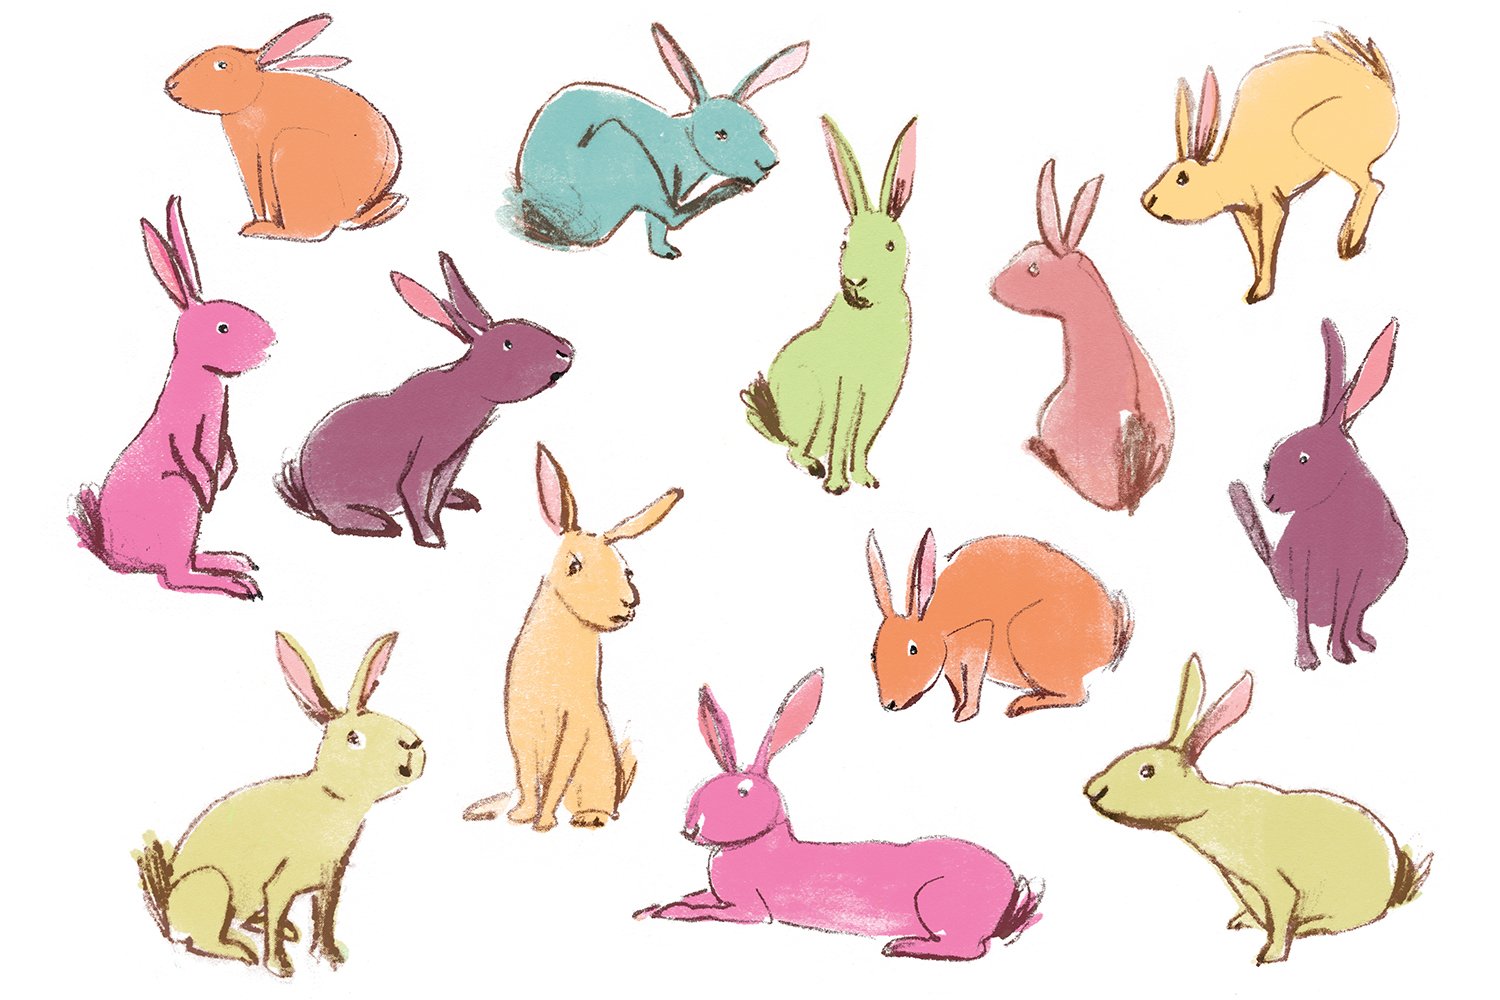 Rabbit character studies